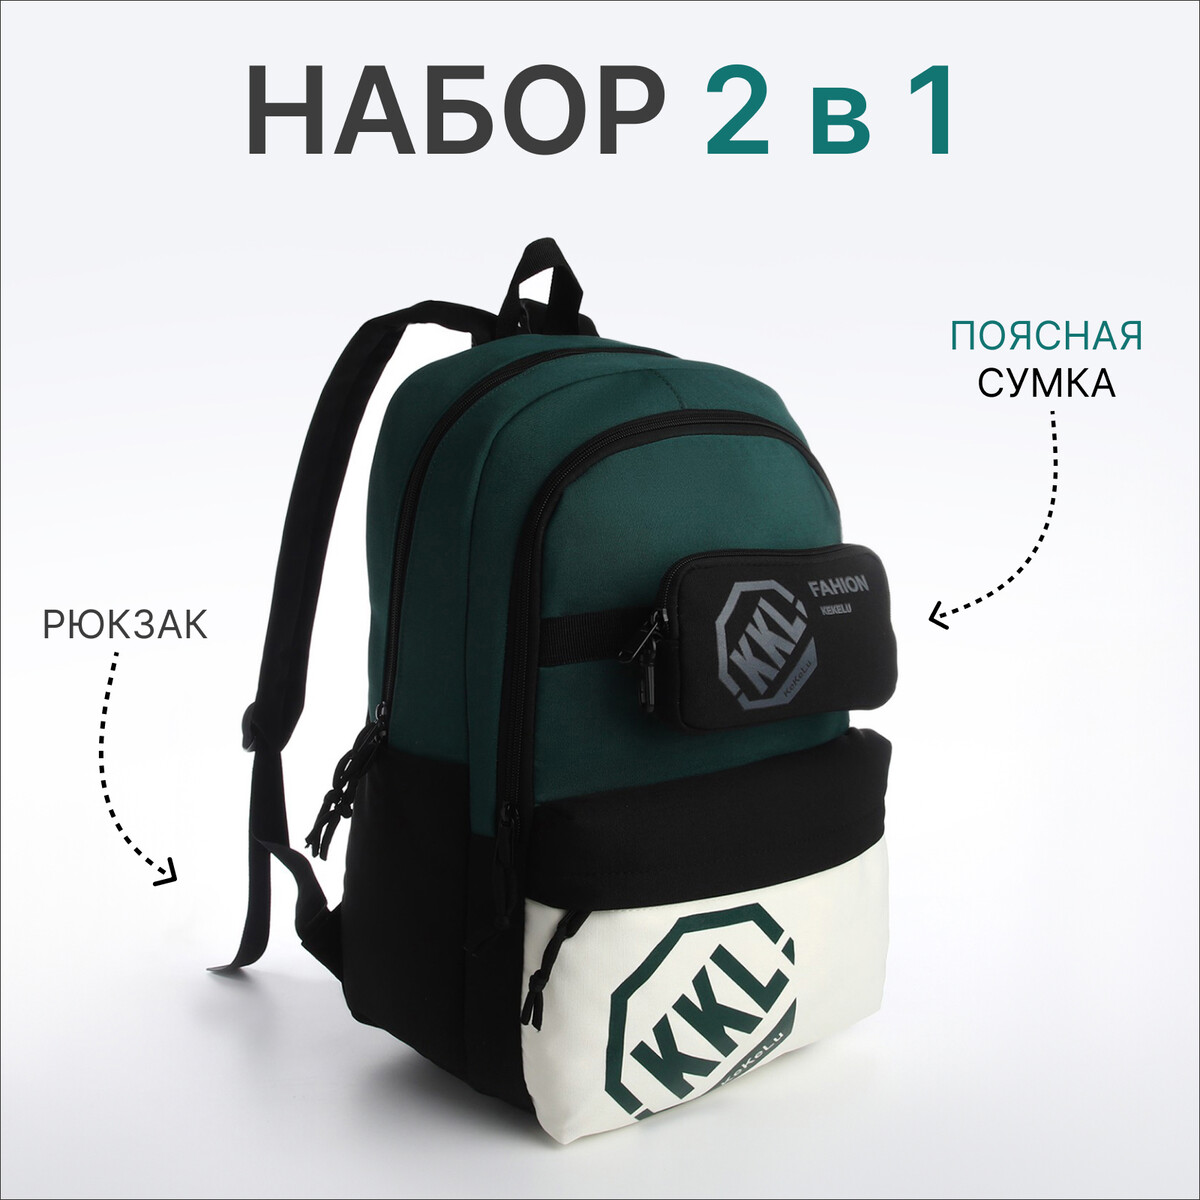 Рюкзак молодежный из текстиля на молнии, 3 кармана, сумка, держатель для чемодана, цвет черный/зеленый рюкзак молодежный из текстиля на молнии 3 кармана зеленый